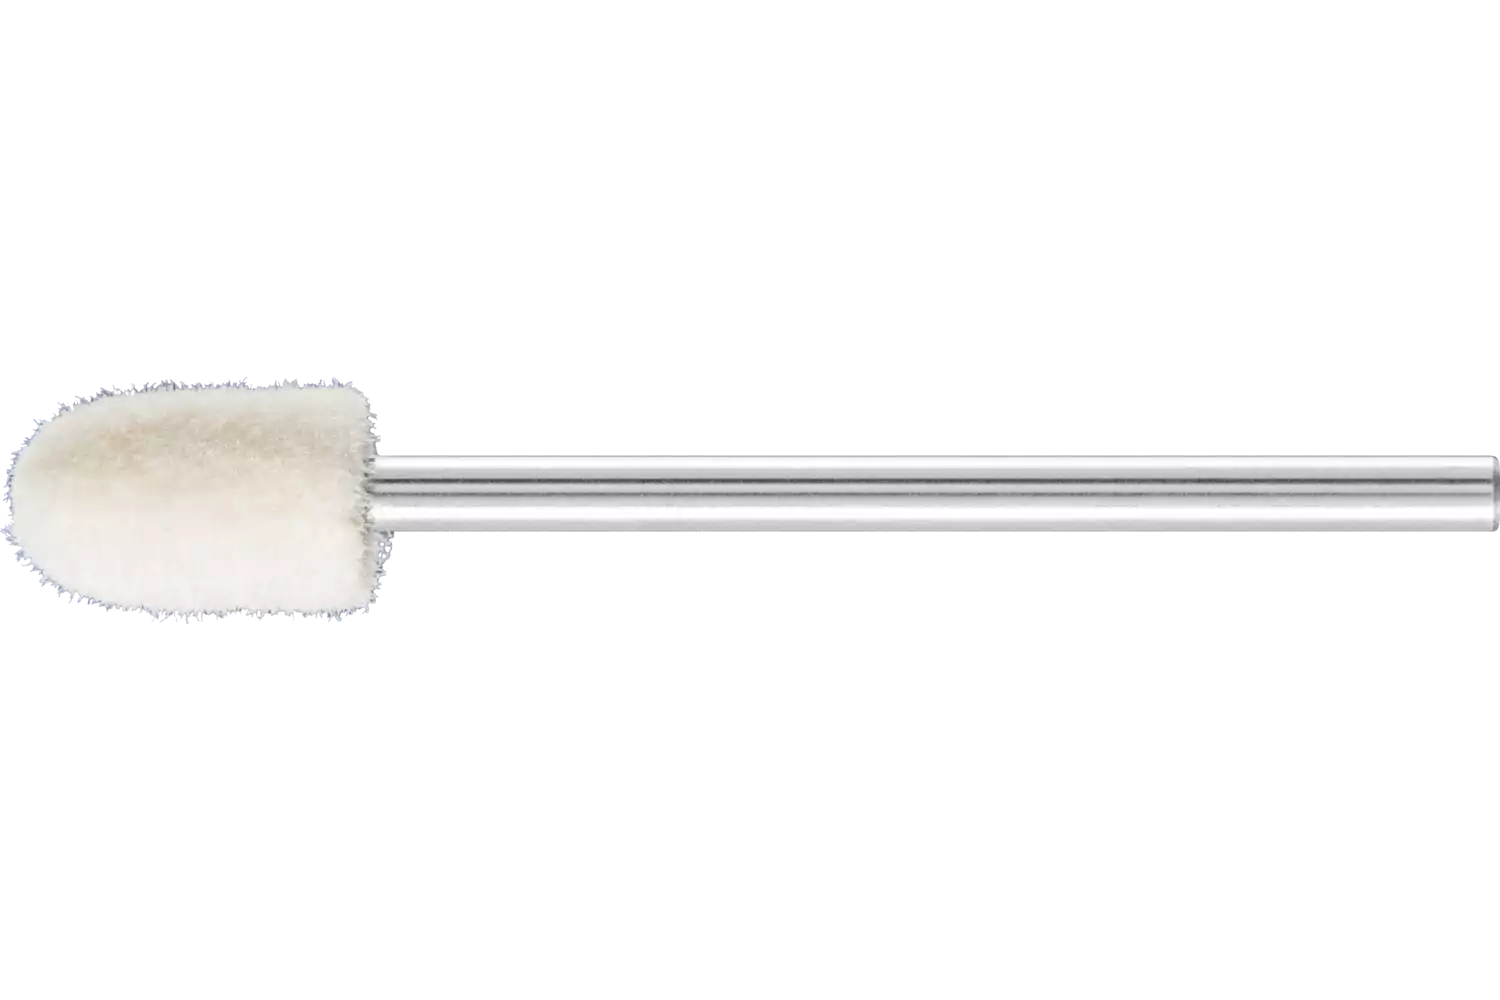 Feltri con gambo per lucidare medio-duri forma cilindrica con testa a sfera Ø 6x10 mm, gambo Ø 2,35 mm 1